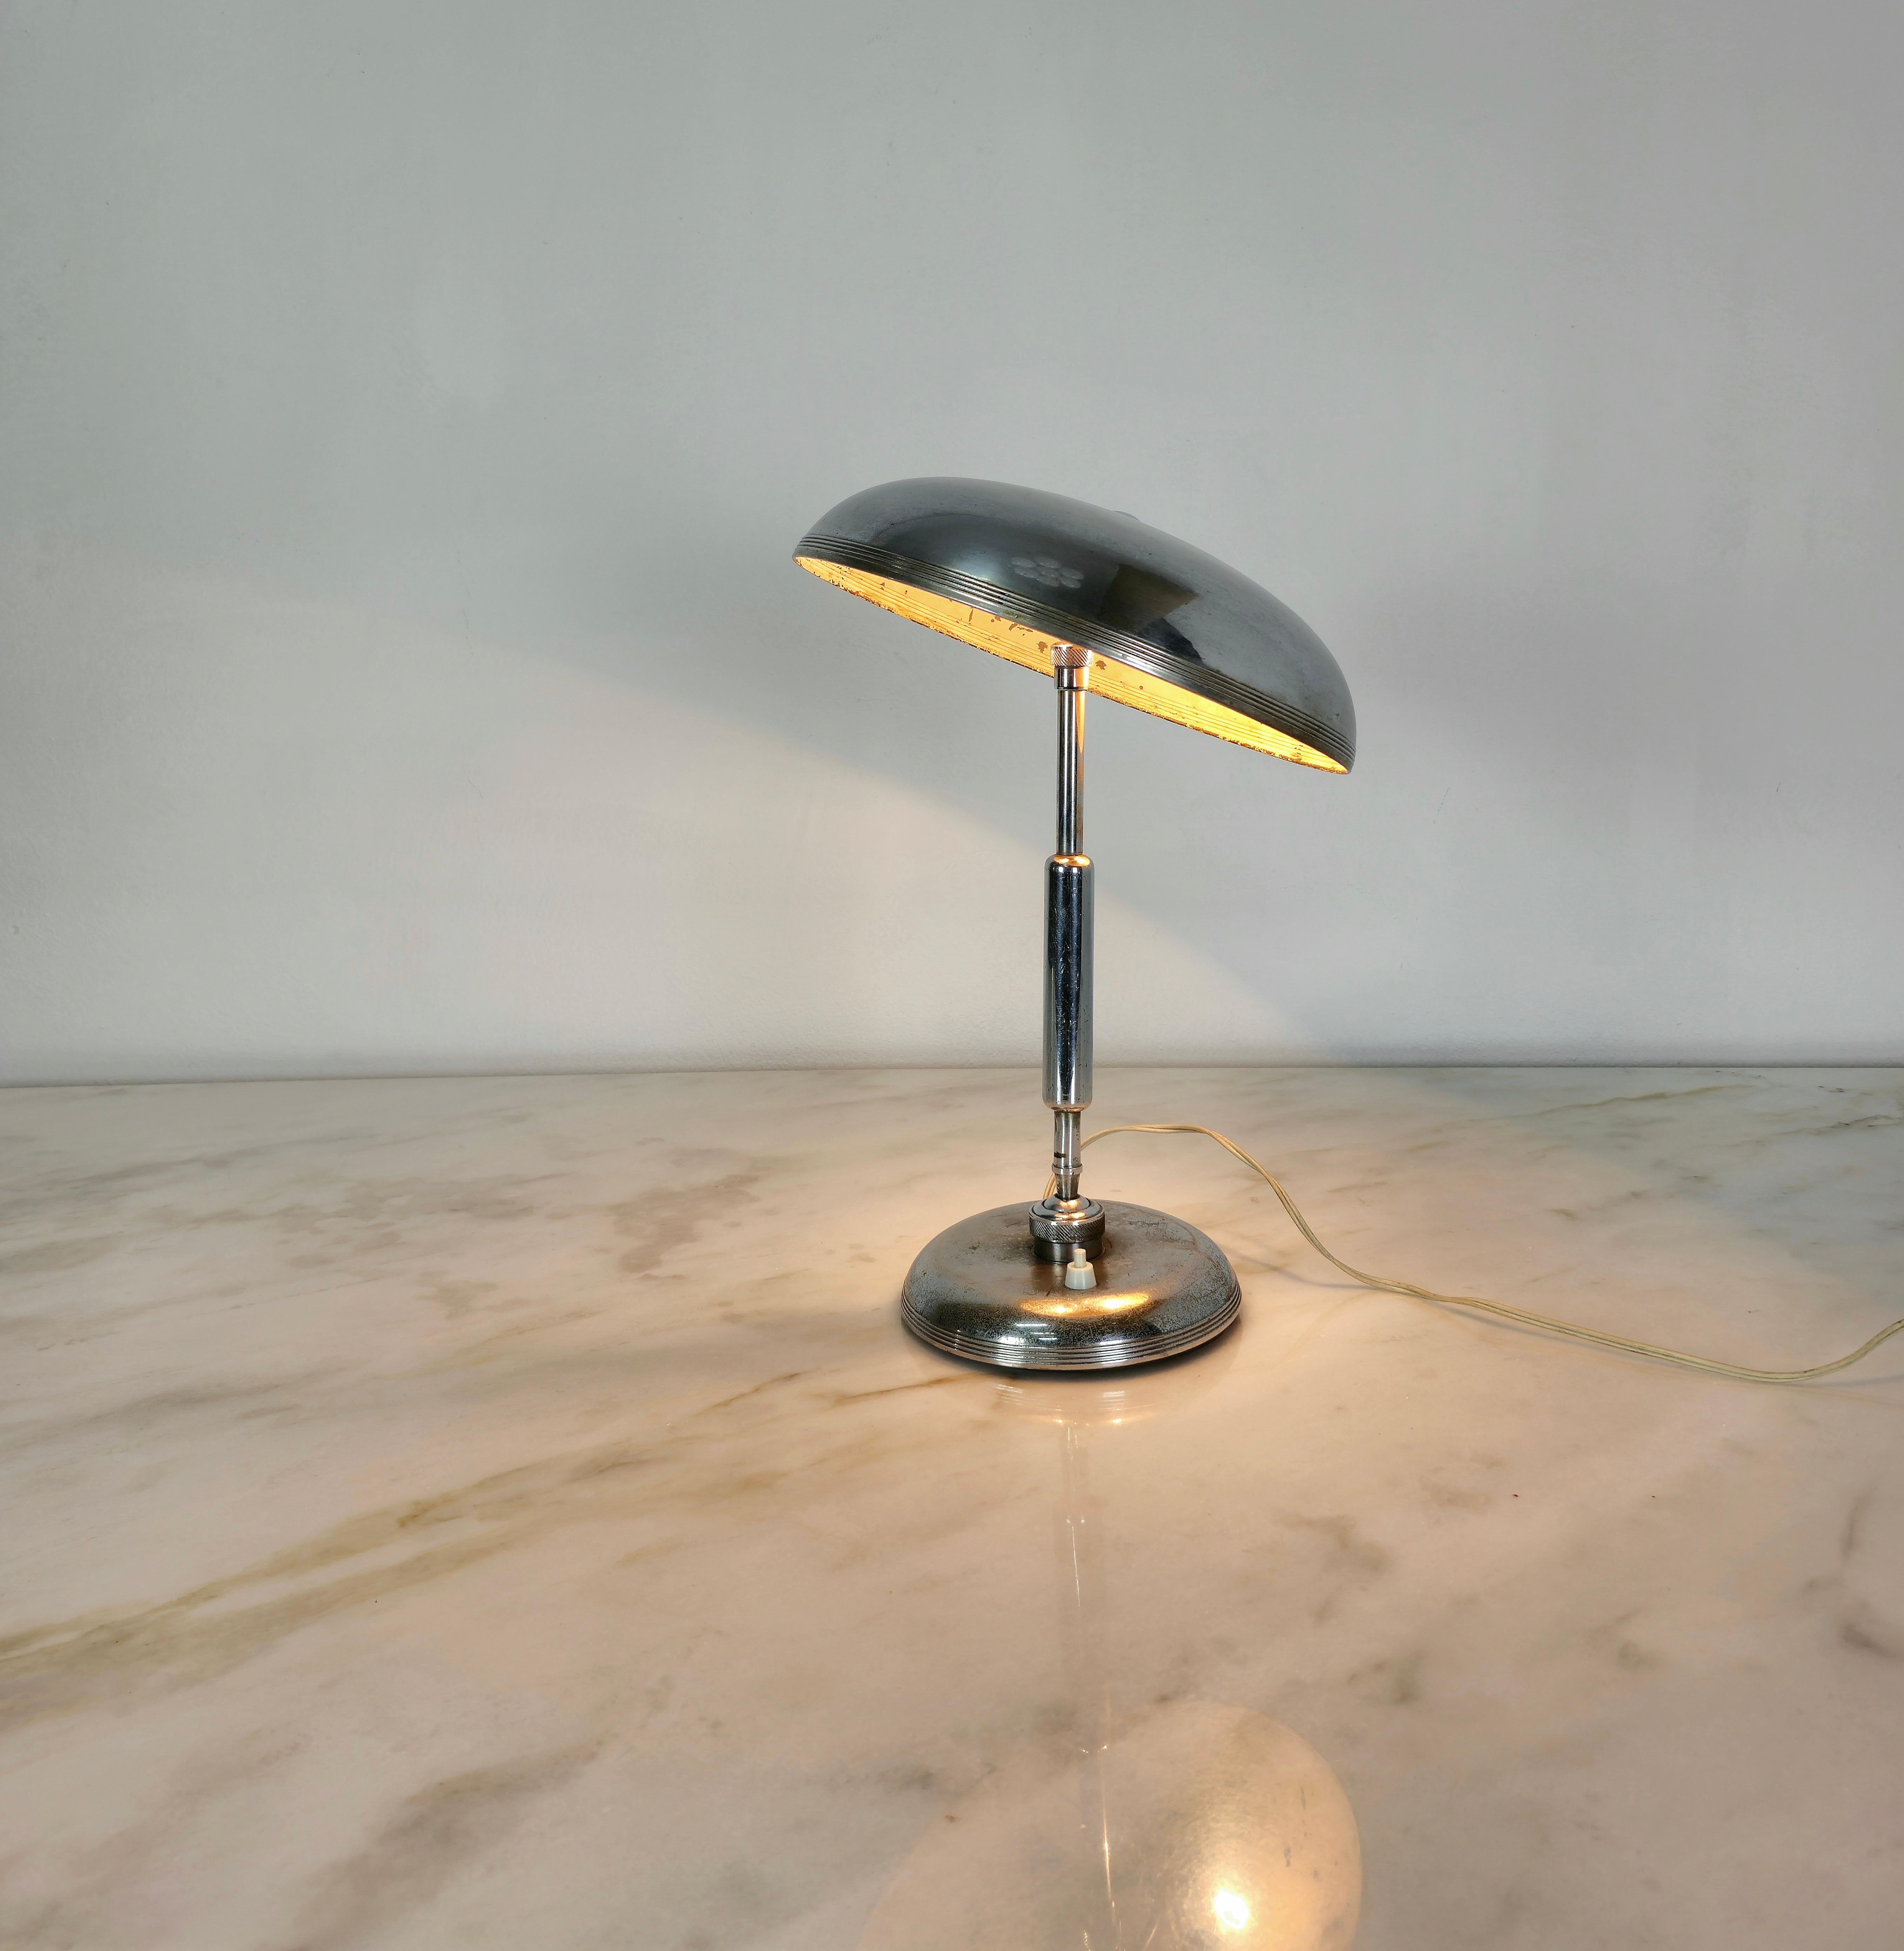 Rare lampe de table conçue par l'architecte Giovanni Michelucci et produite dans les années 1950 en Italie par Lariolux.
La lampe présente une fonctionnalité ingénieuse grâce aux deux articulations, l'une positionnée à la base de la tige et l'autre